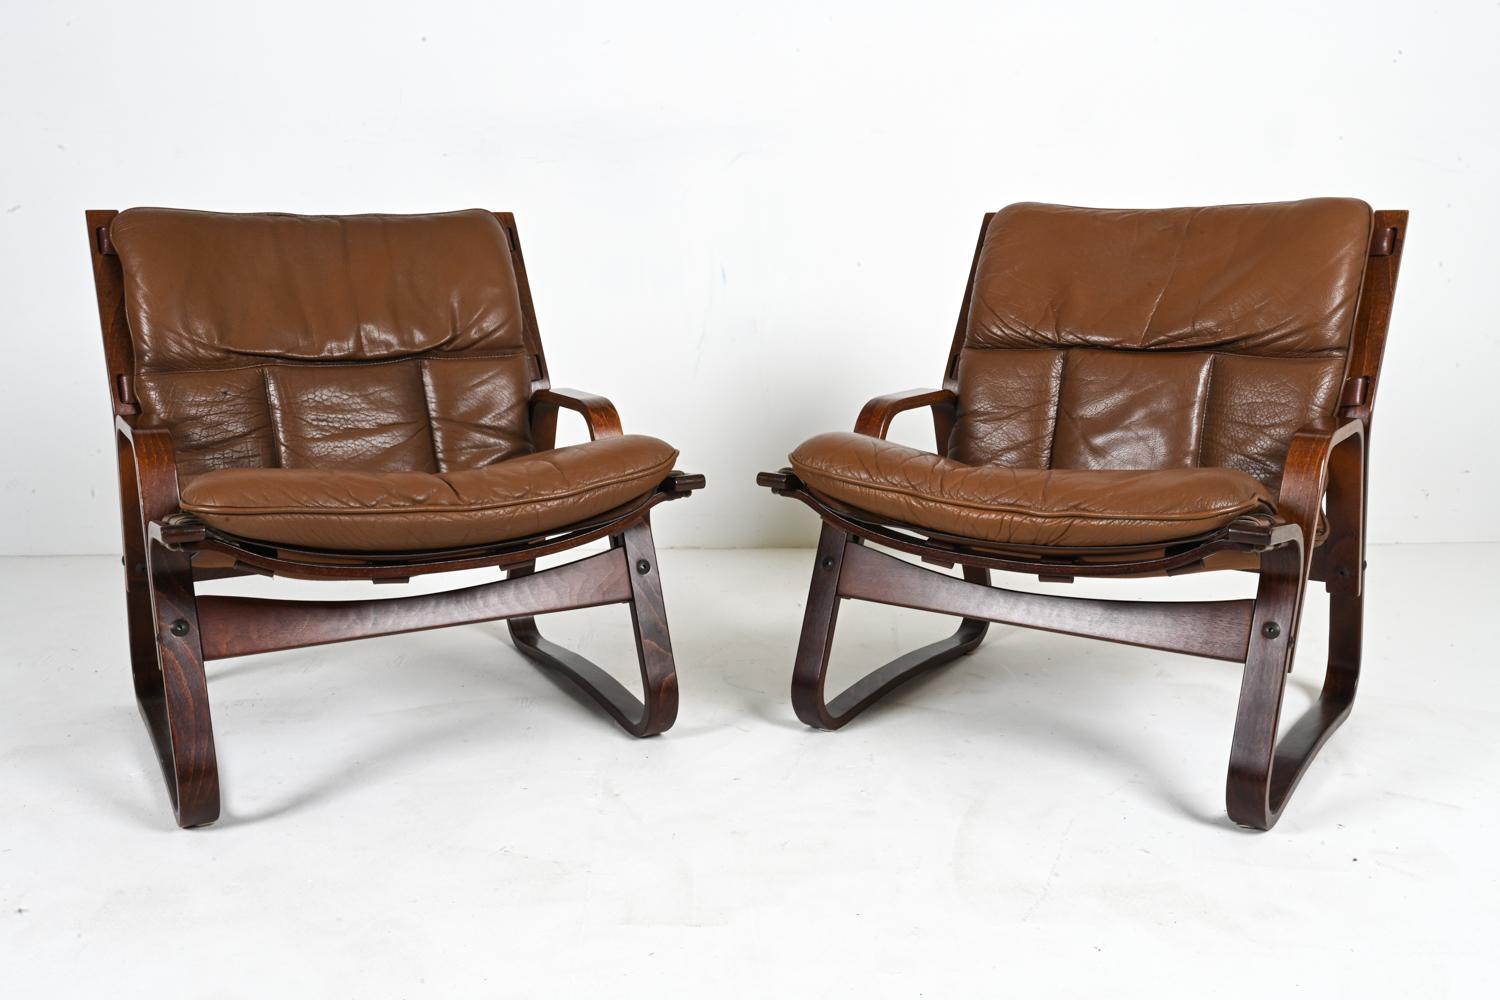 Vivez vos rêves de bungalow des années 1970 avec cette rare paire de chaises de salon modernes norvégiennes conçues par Giske Carlsen pour Kleppe Møbelfabrik. Fabriqués en bois de hêtre courbé, les cadres robustes sont recouverts d'une riche